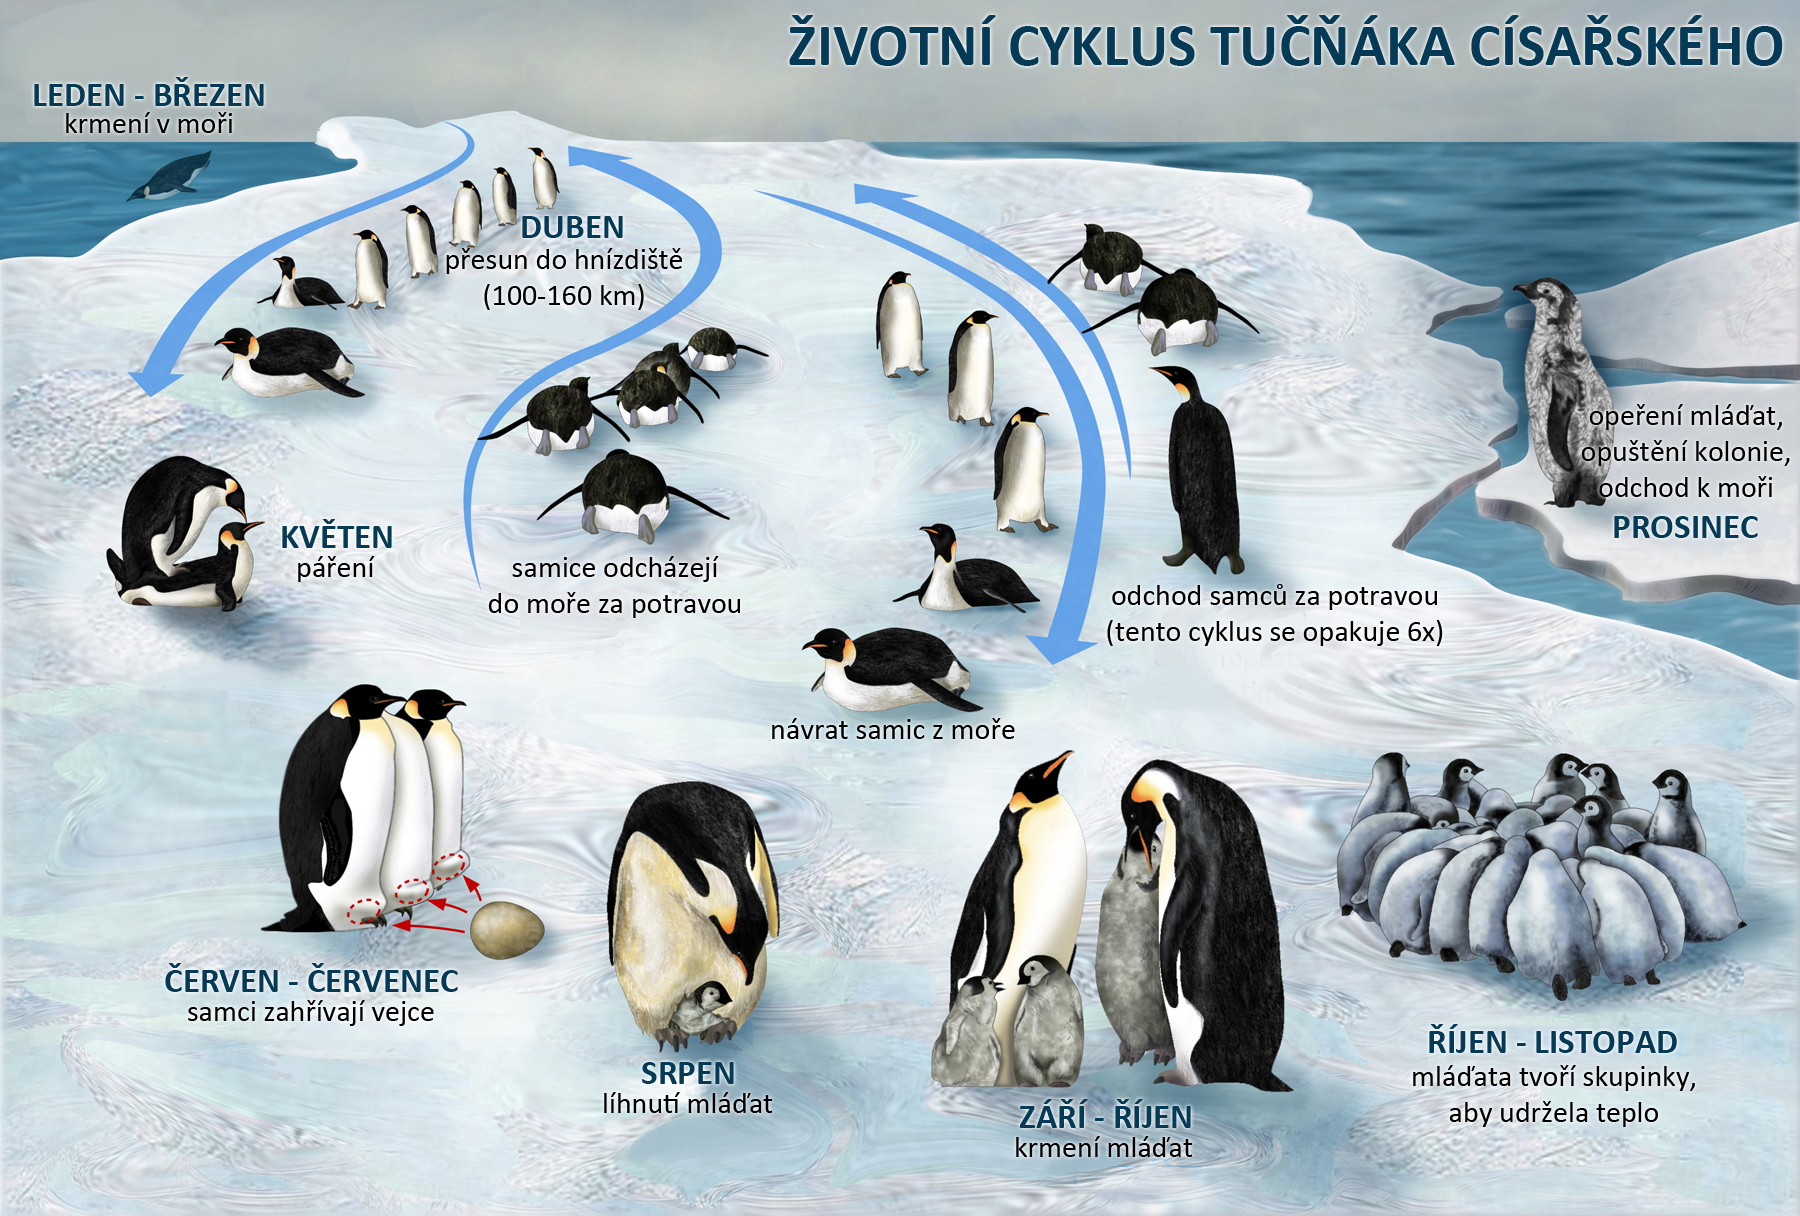 Životní cyklus tučňáka císařského